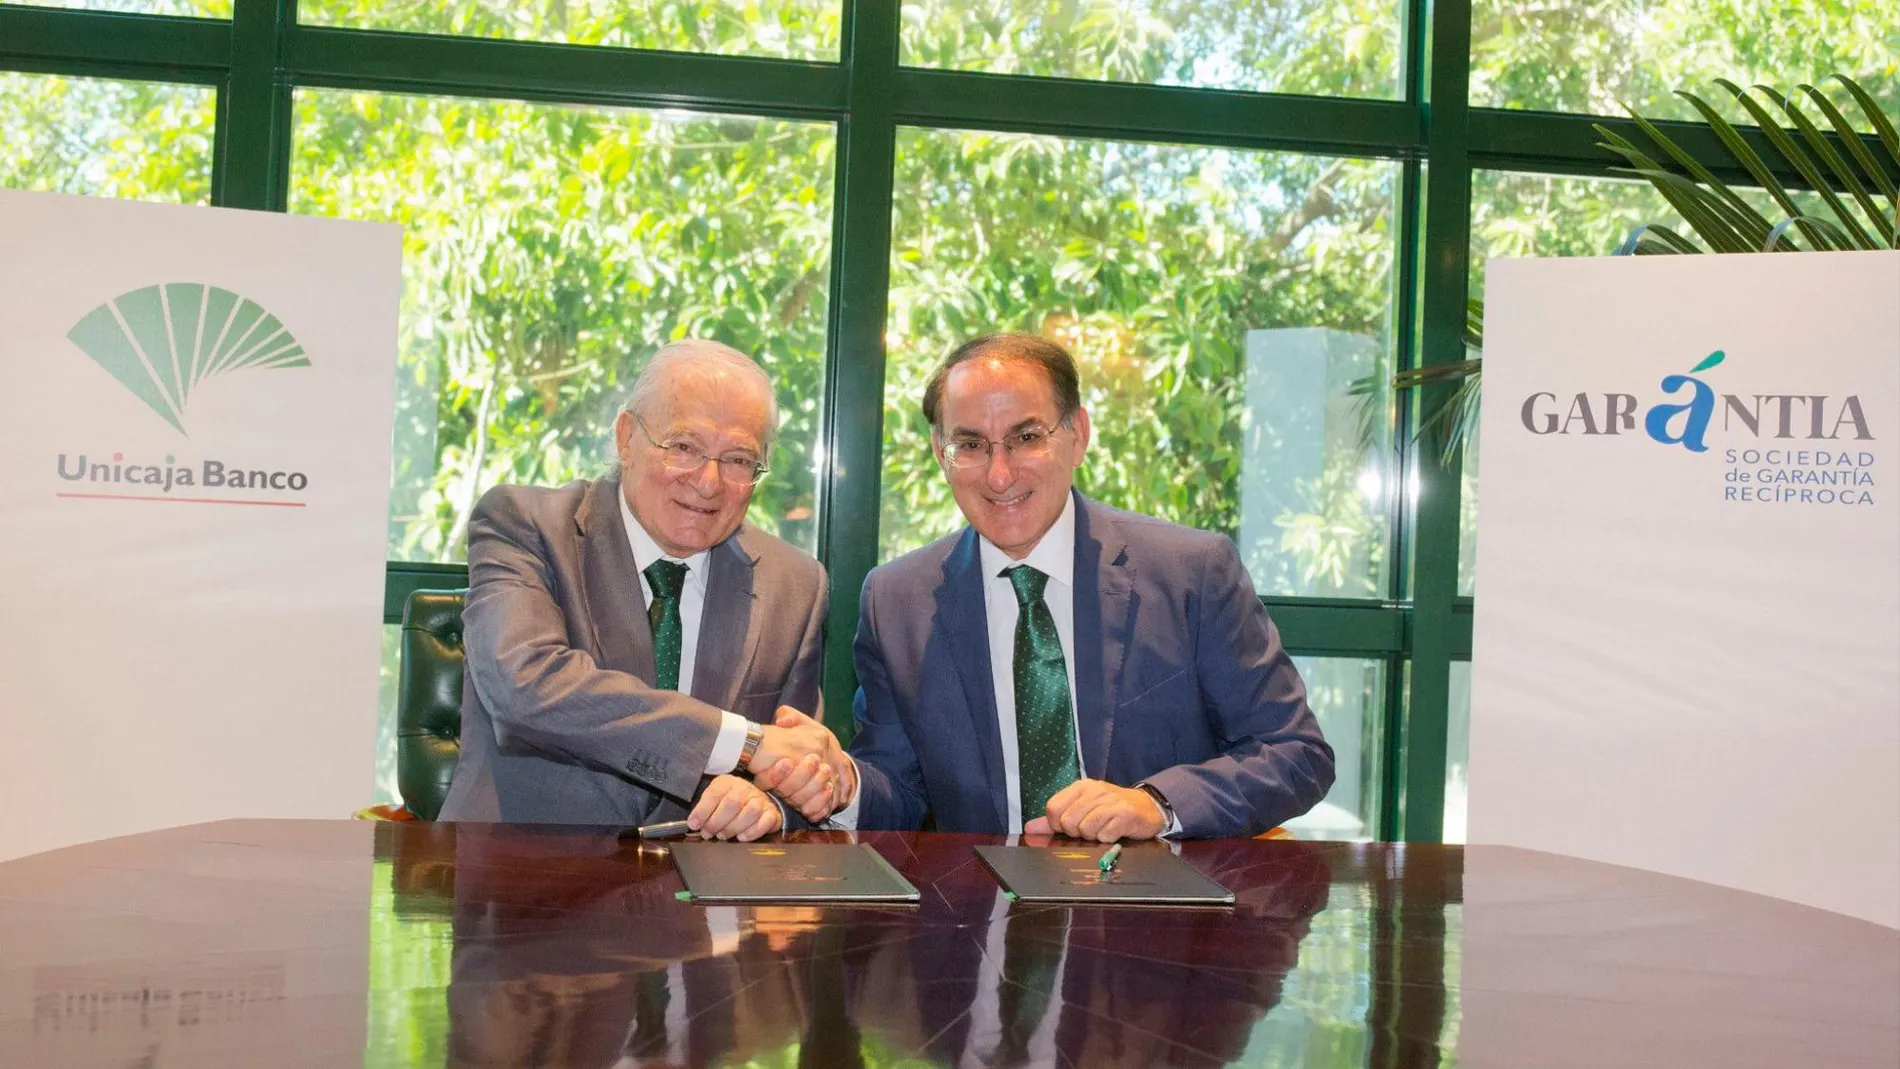 El presidente de Unicaja Banco, Manuel Azuaga, y el responsable de Garántia, Javier González de Lara